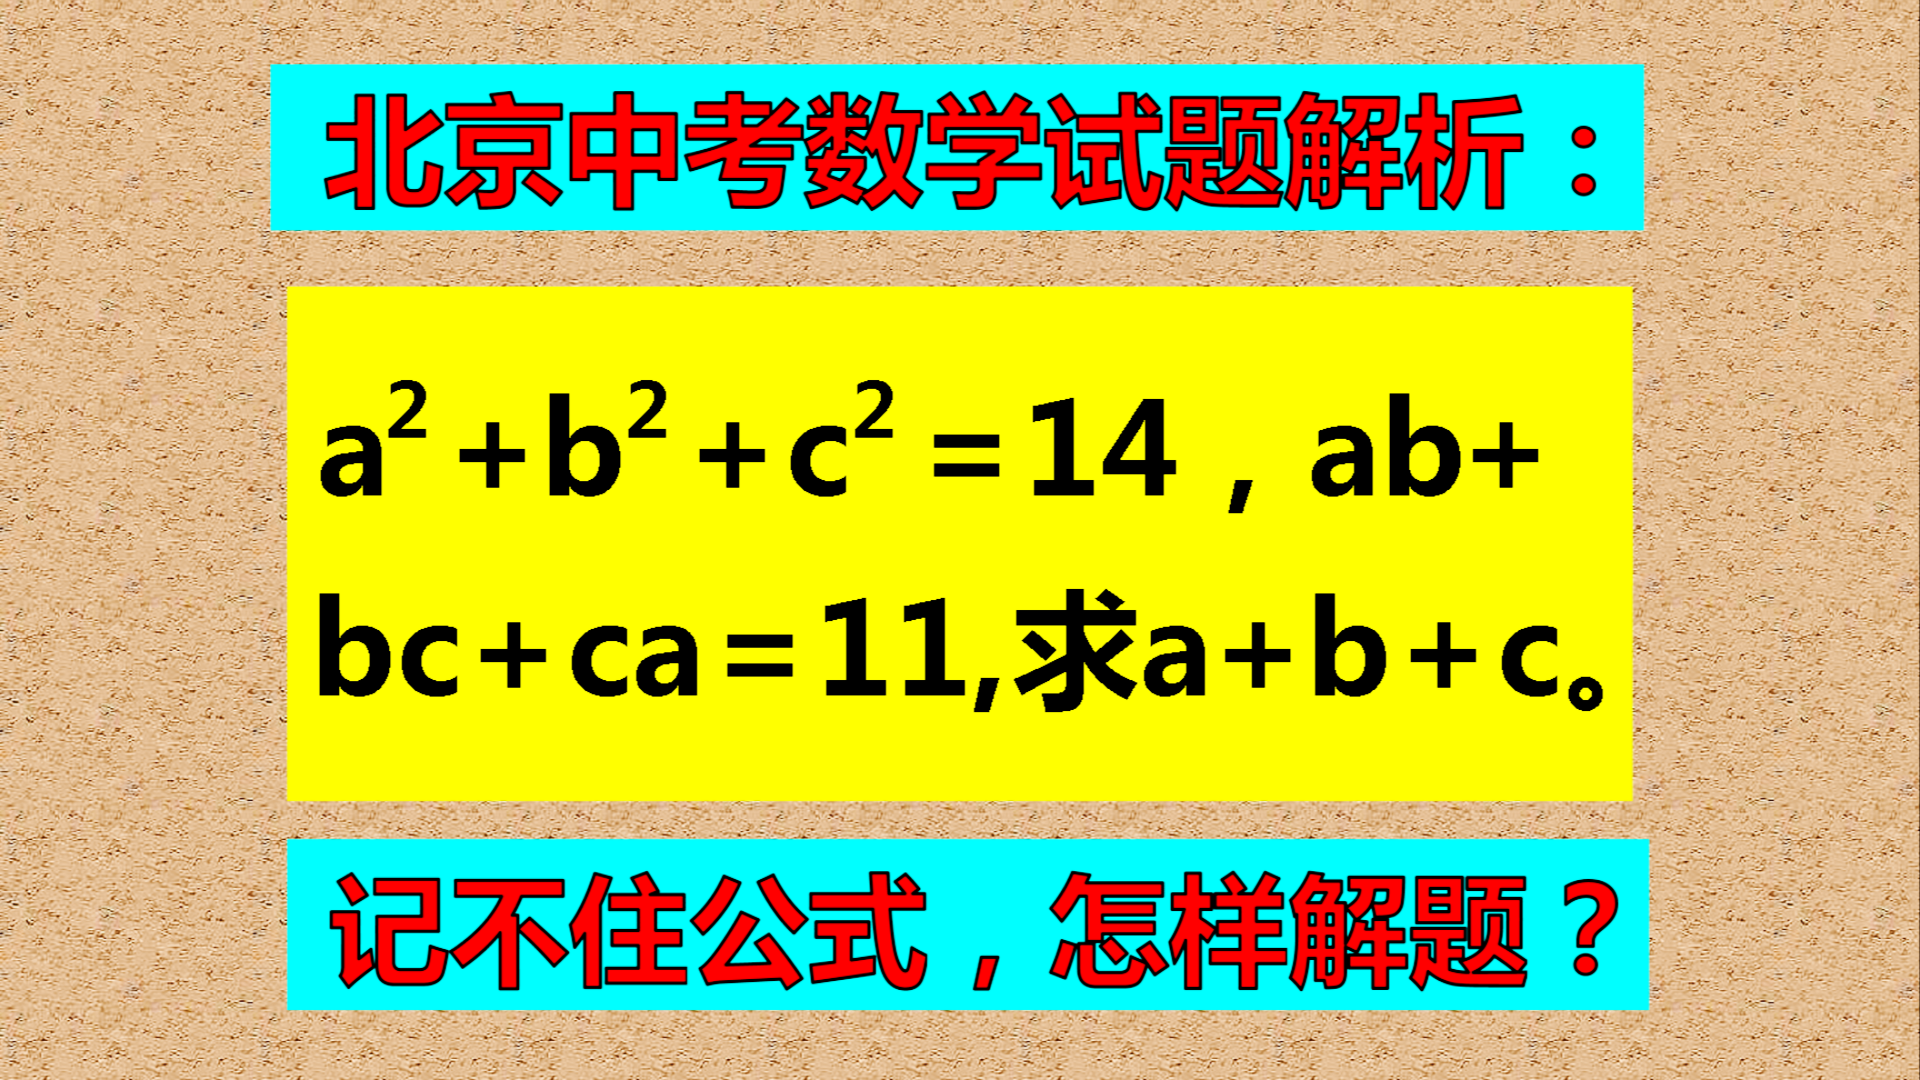 北京中考试题解析, 运用完全平方公式, 求x+y+z的值。